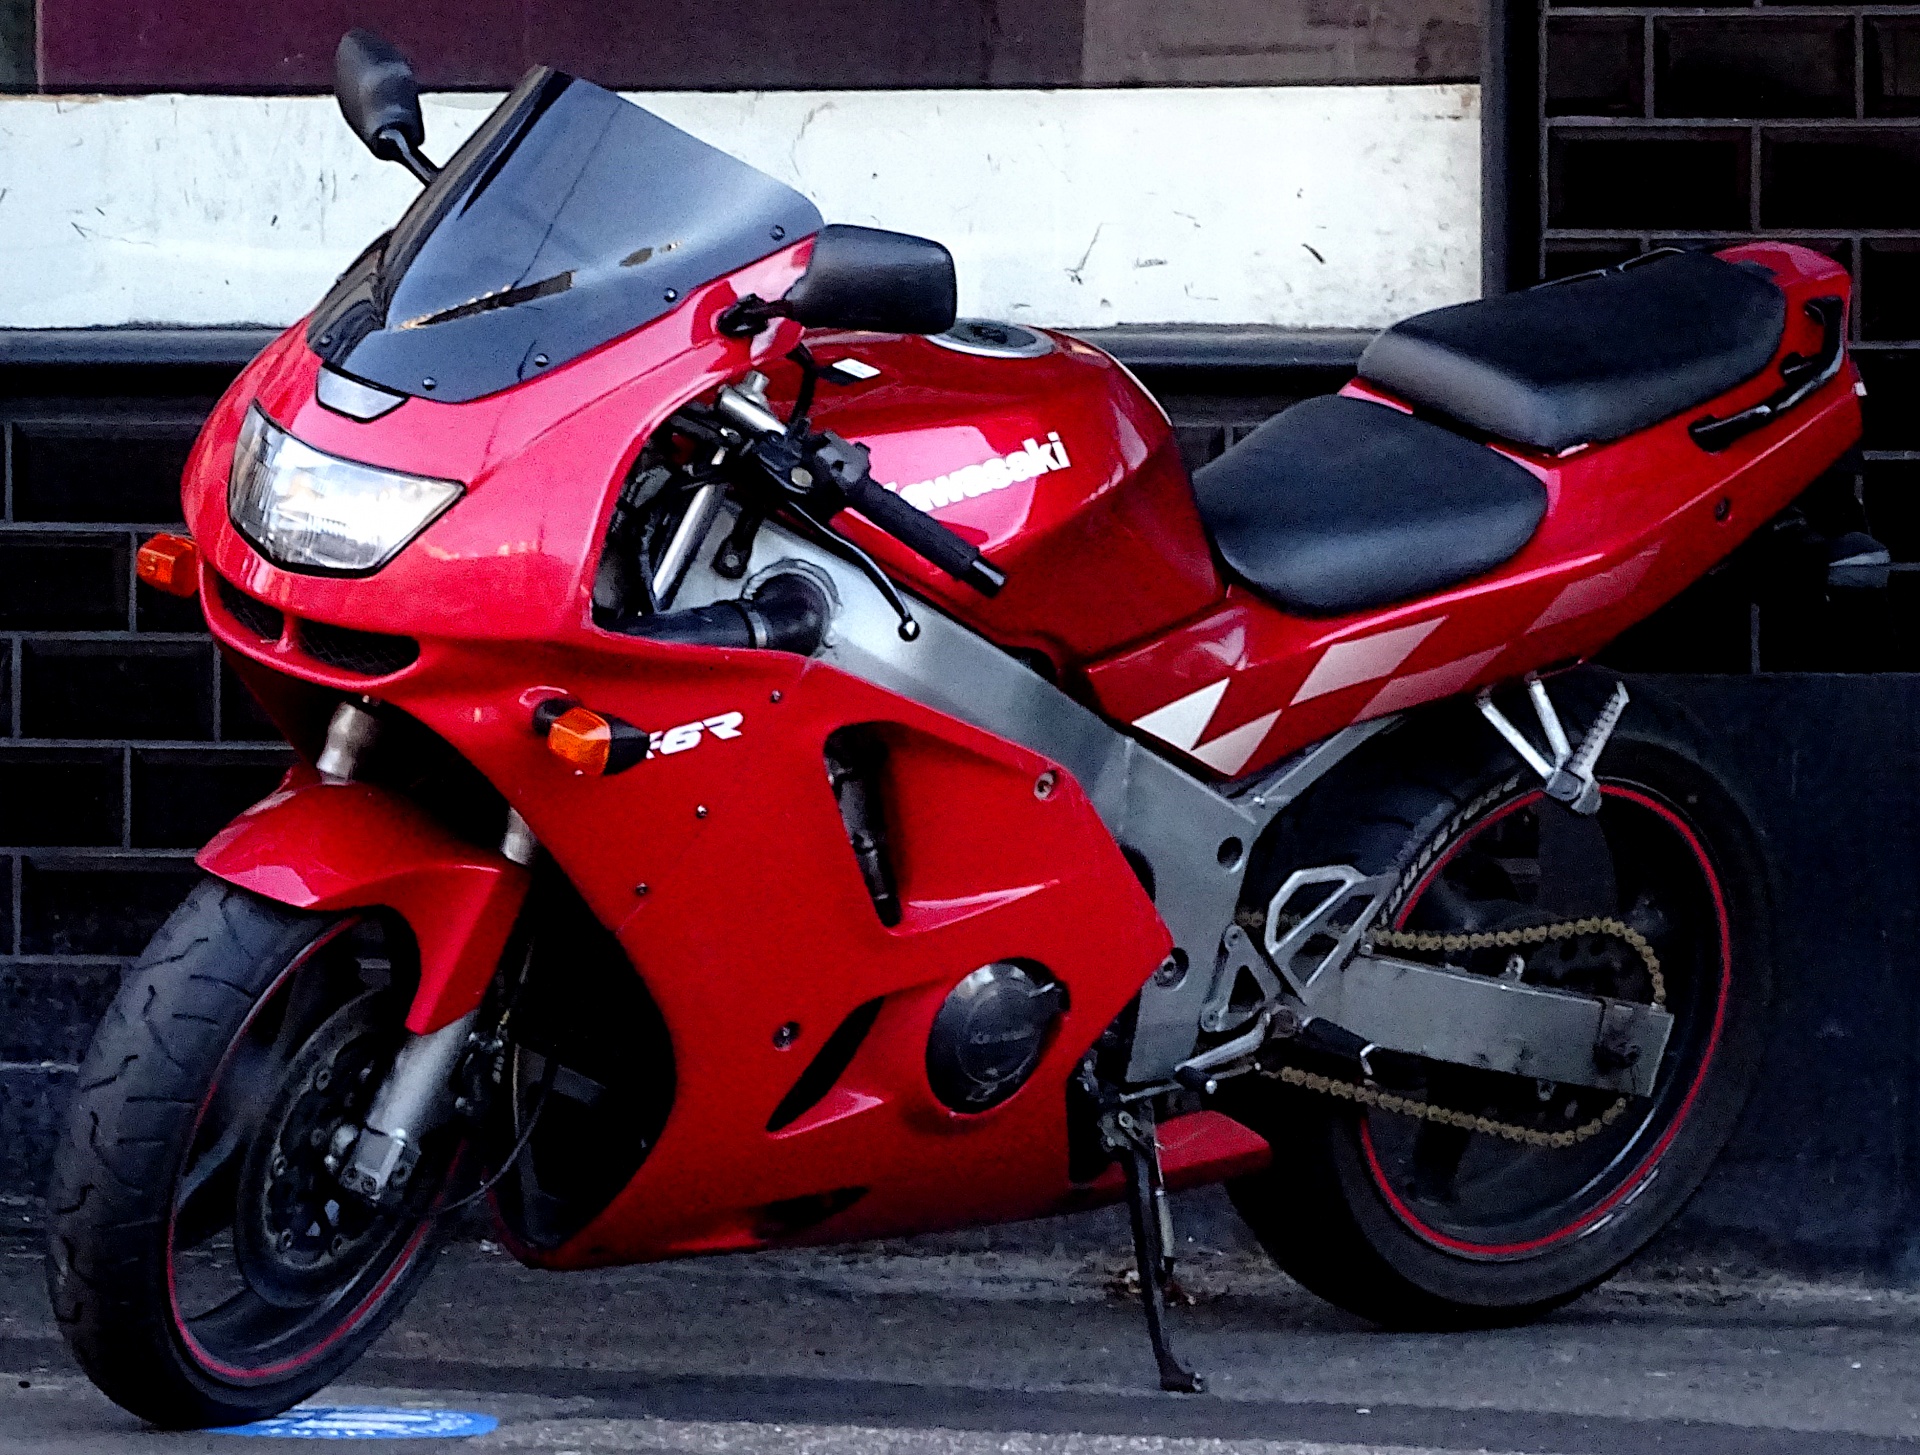 Red Kawasaki Motorcycle